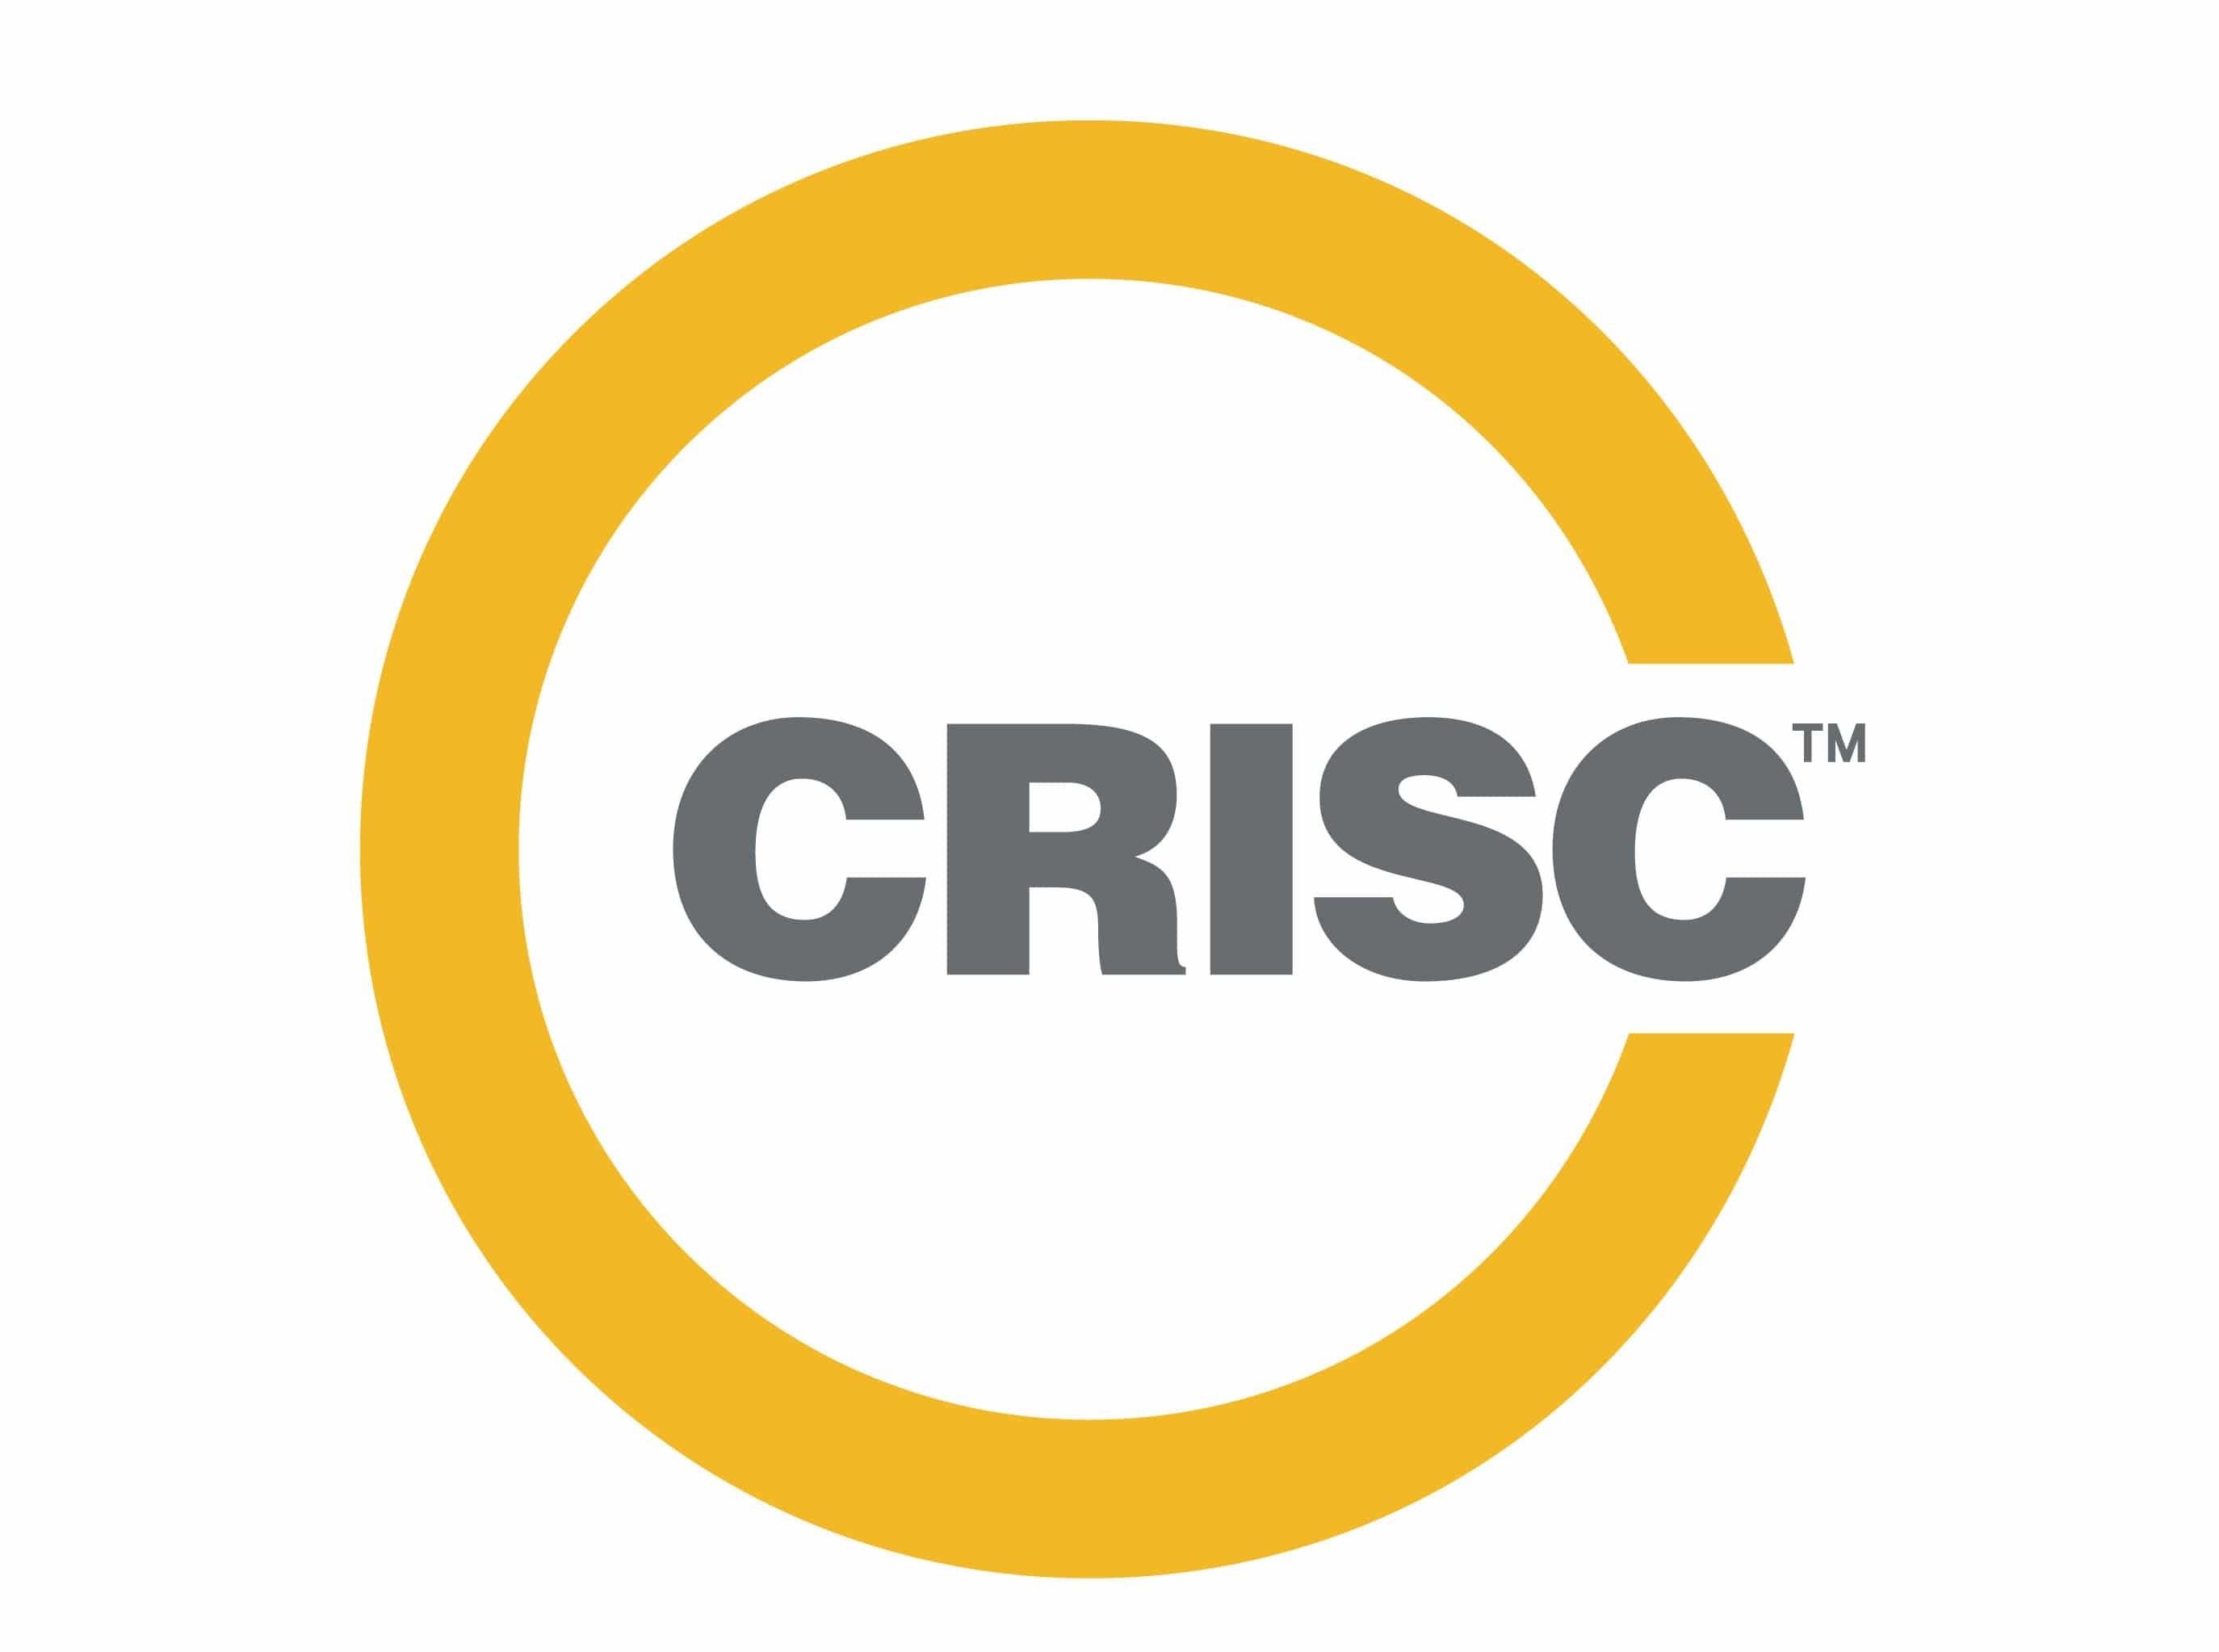 CRISC Logo - ISACA